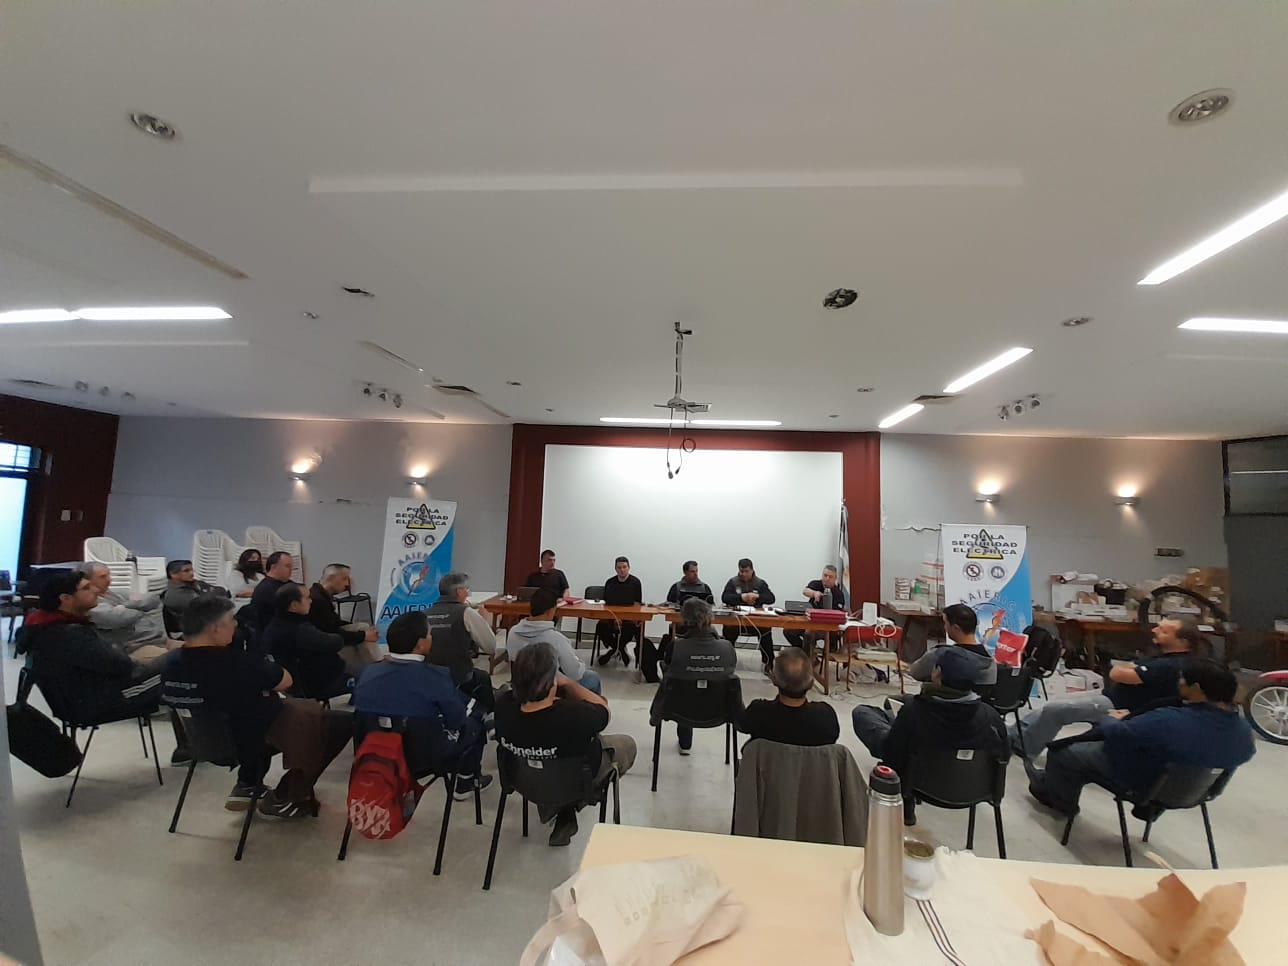 Encuentro de Profesionales Eléctricos Alberti 2022